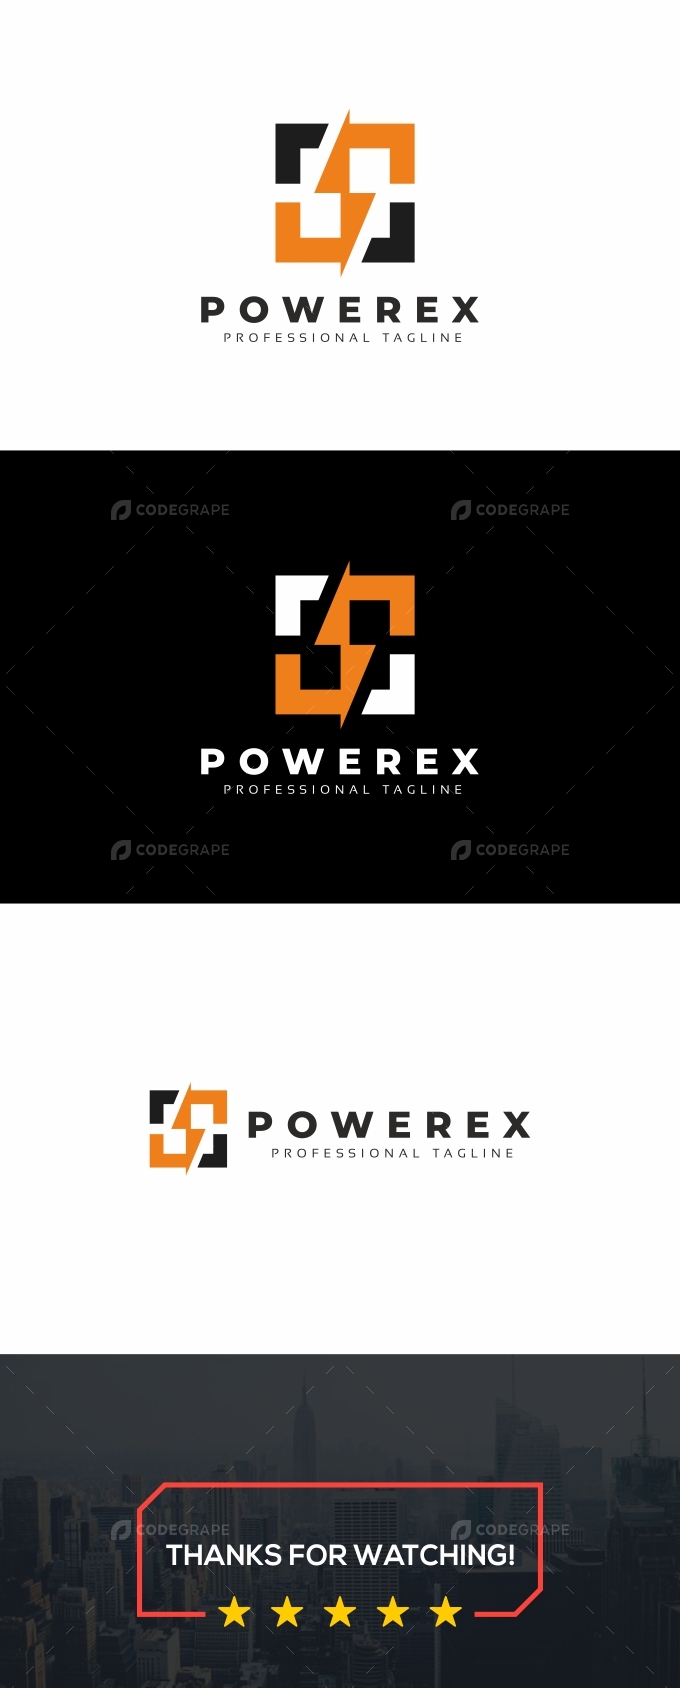 Power Square Logo